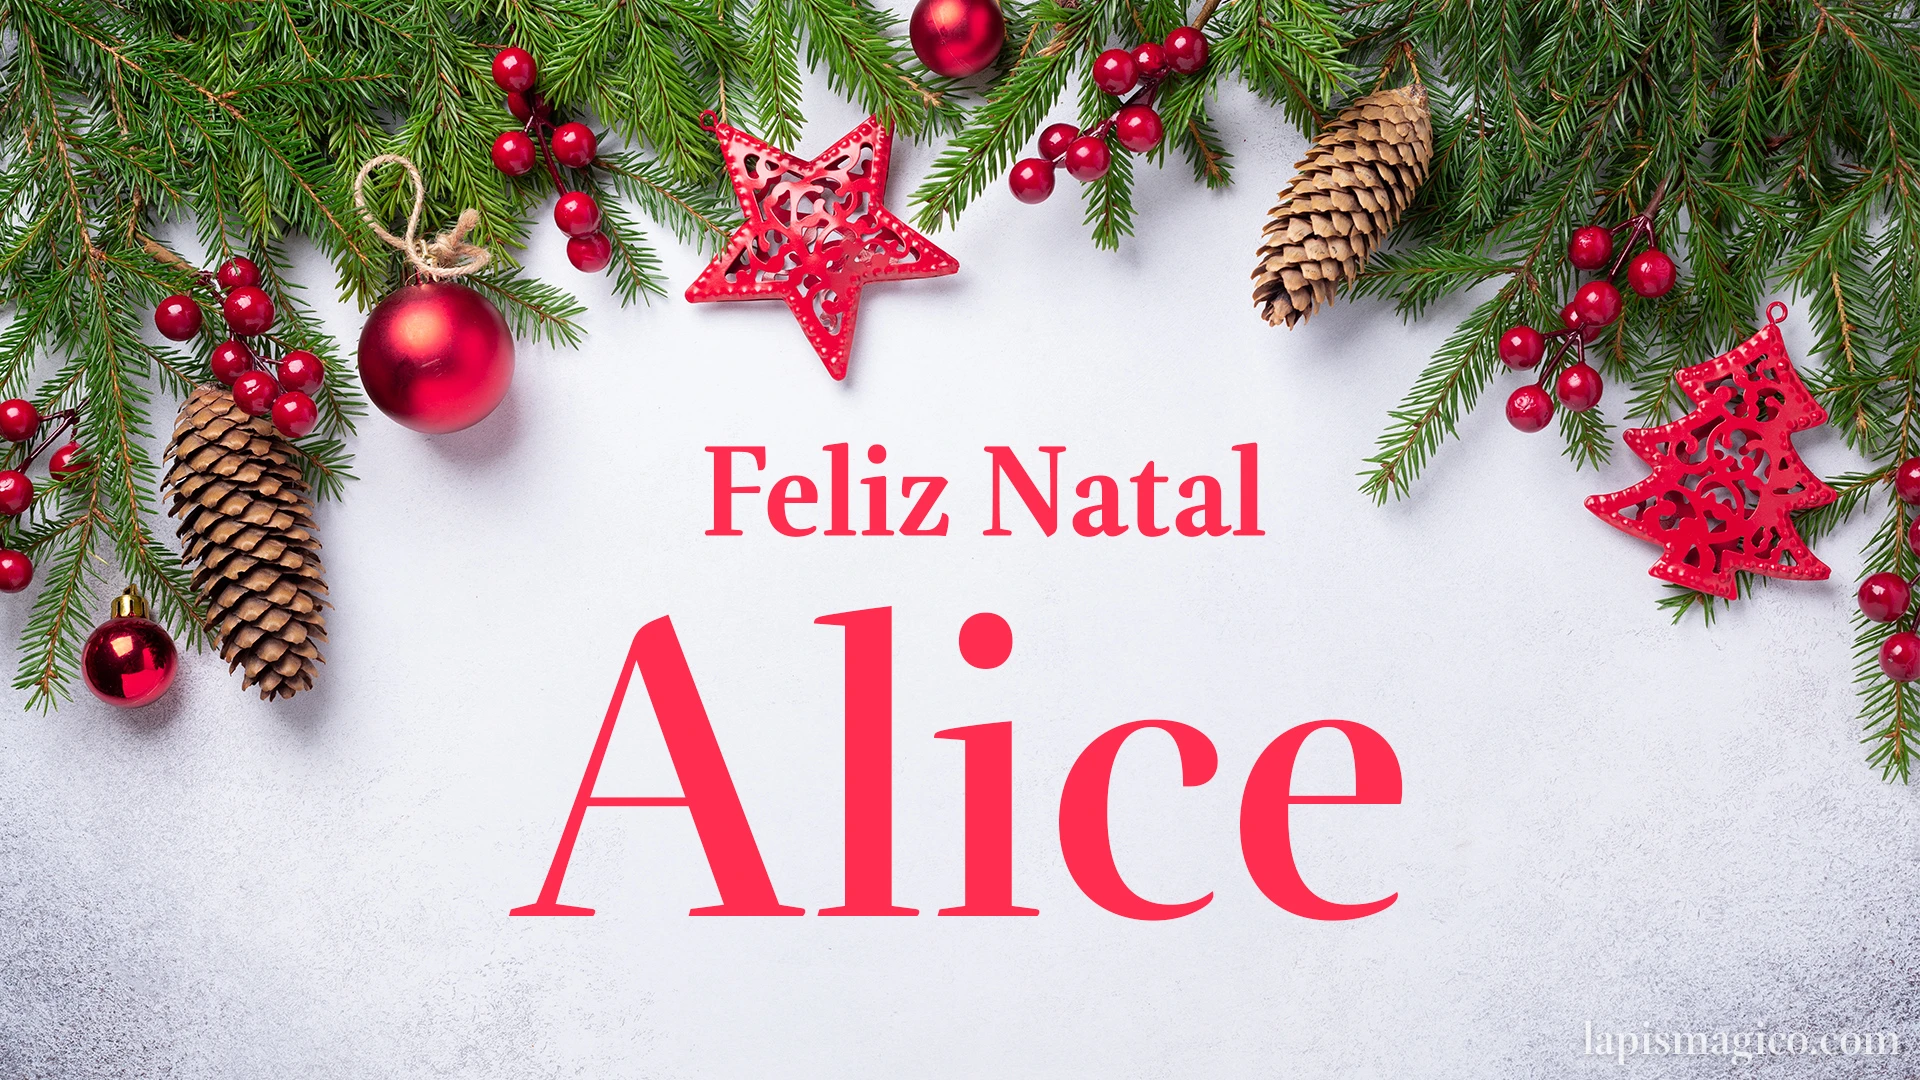 Oh Alice, cinco postais de Feliz Natal Postal com o teu nome